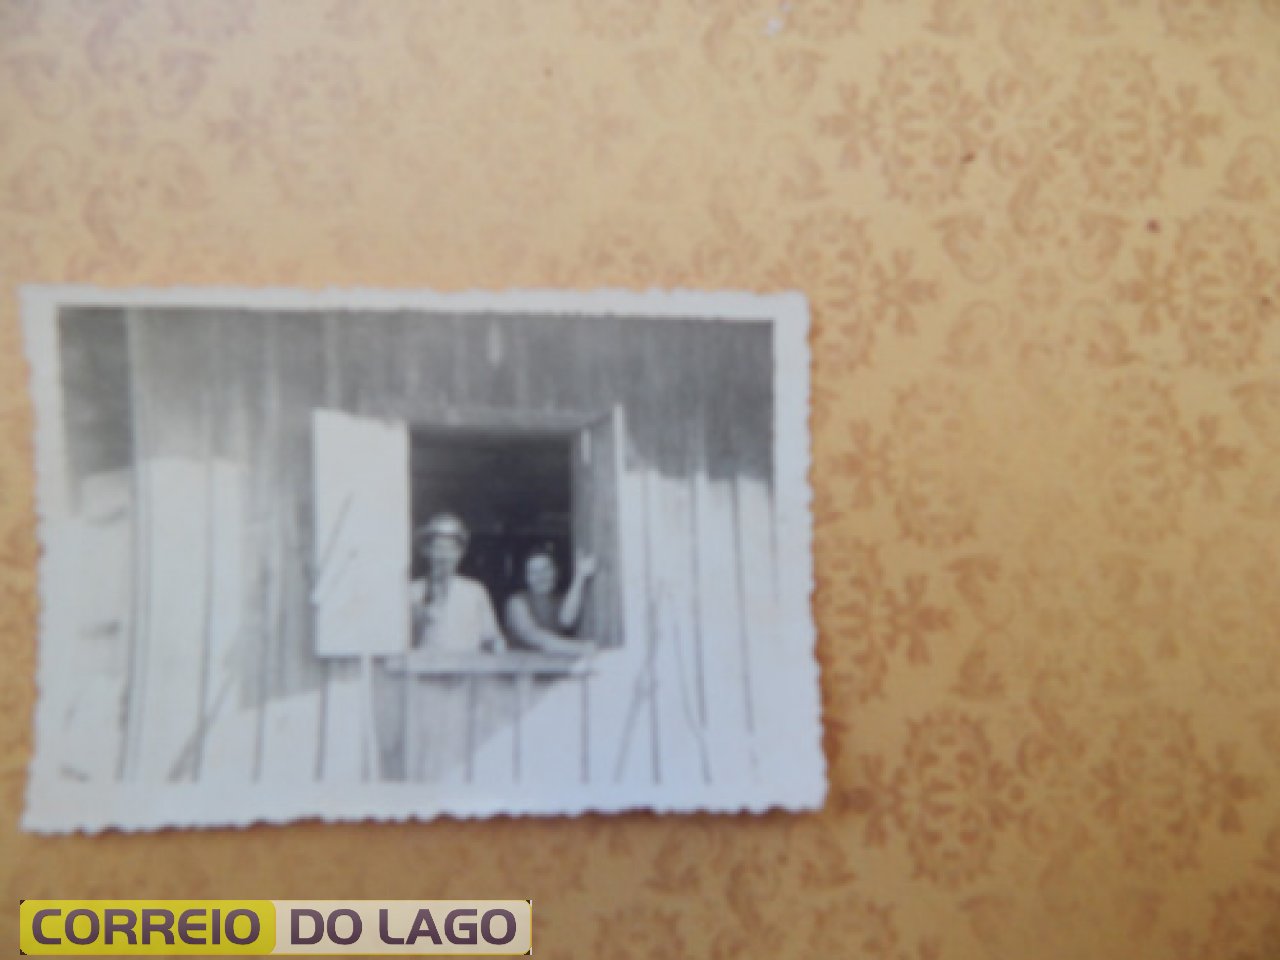 Casal Adolfo e Laura K. Bender, pais de Bronildo Bender (entrevistado).  Na foto aparecem na residência no vilarejo de S. Clemente SH. Início da década de 1970.